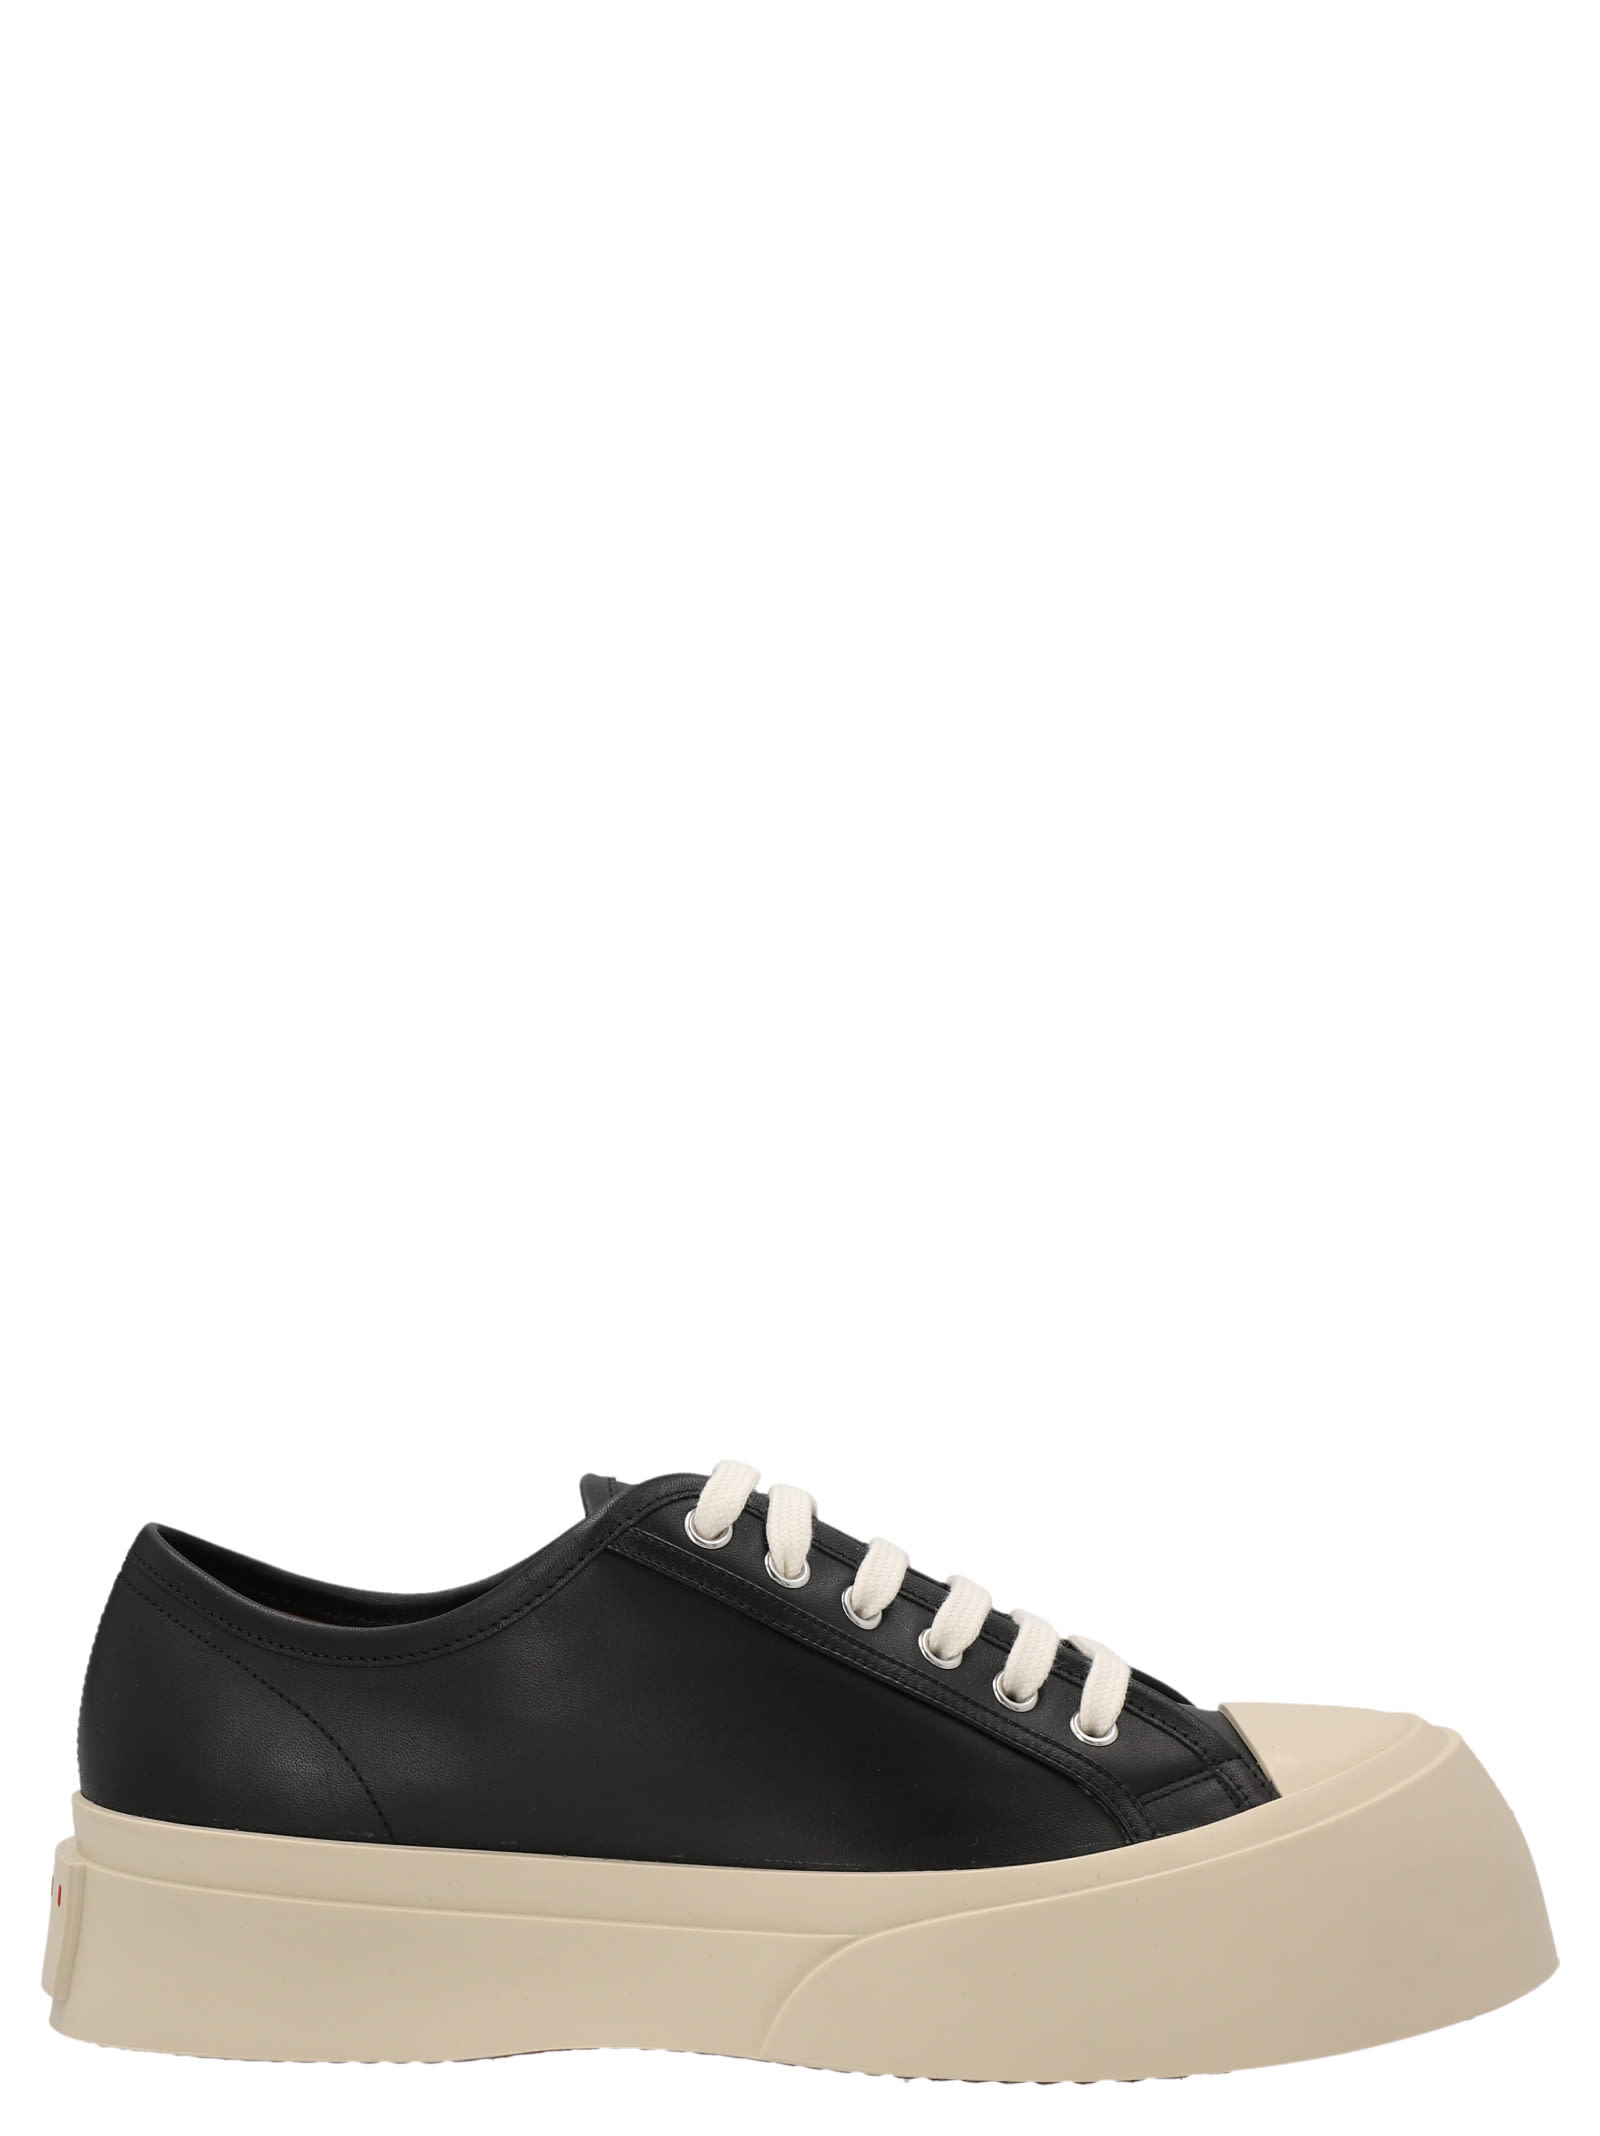 Shop Marni Pablo Sneakers In White/black